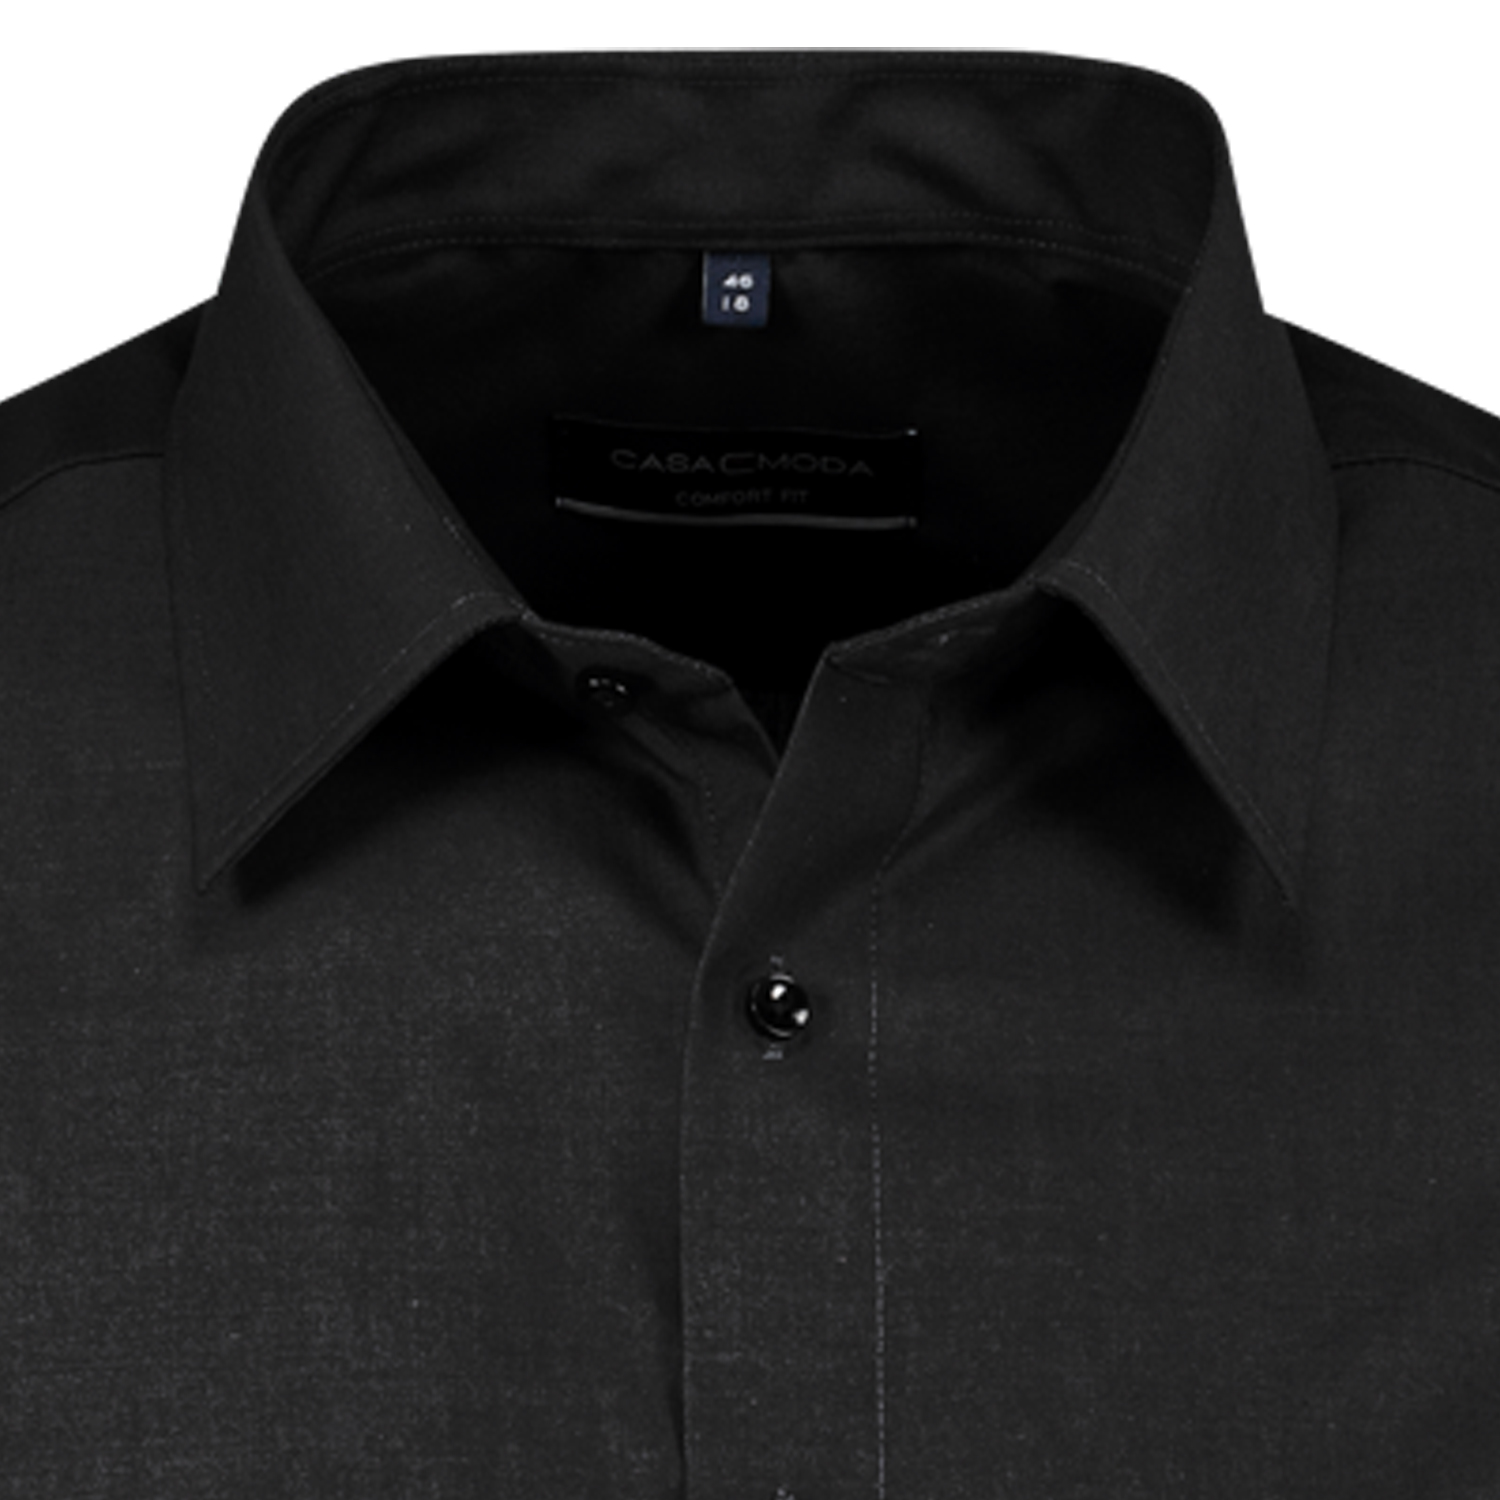 Herren Kurzarmhemd von Casa Moda in schwarz bügelfrei bis Übergröße 7XL